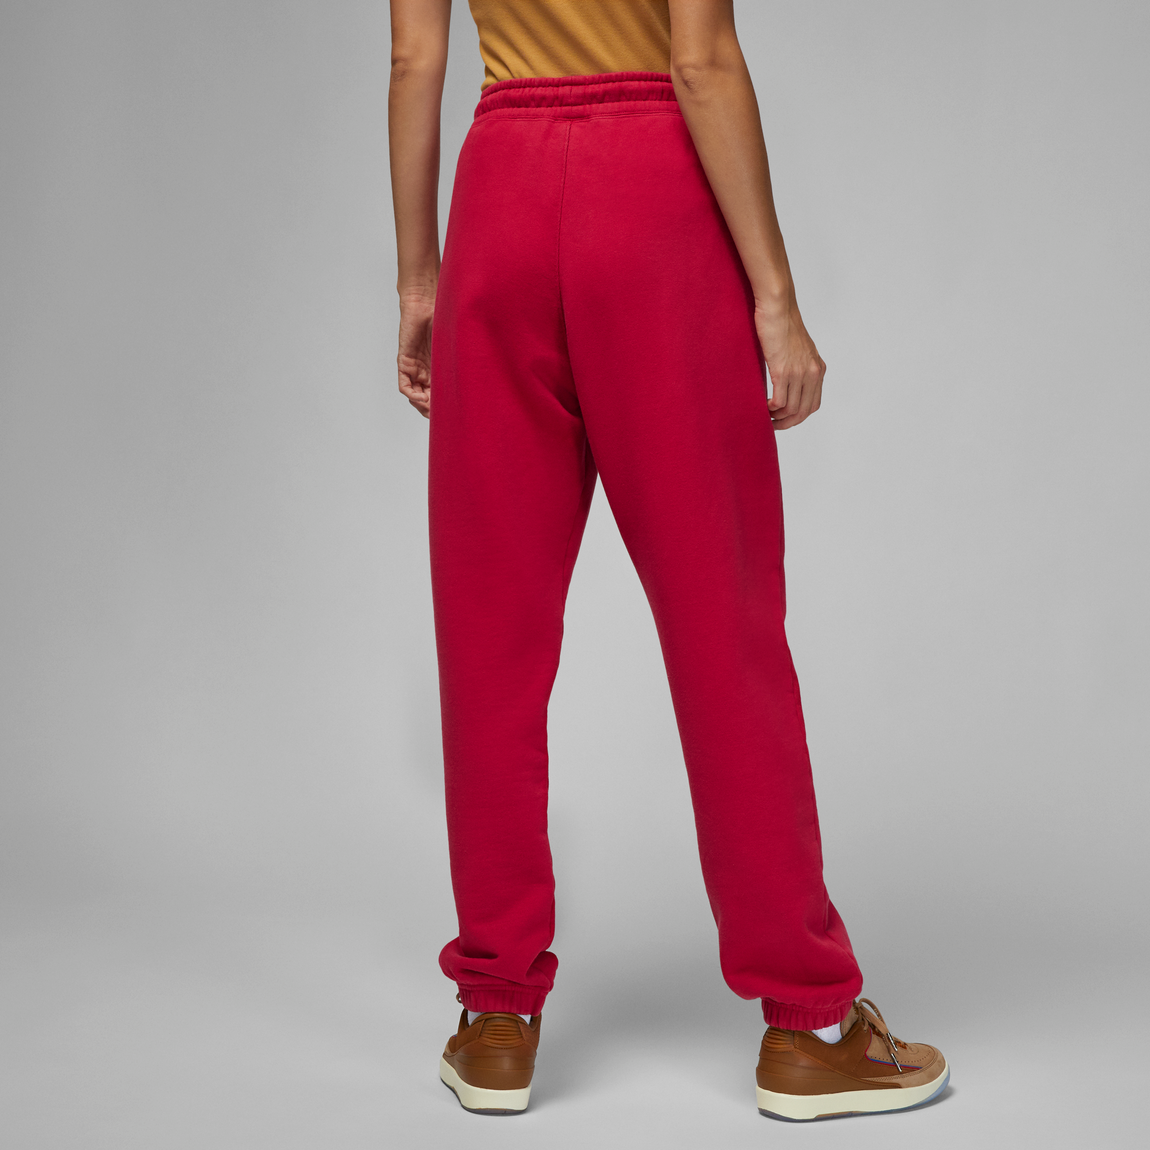 Jordan X TWO18 Women's Fleece Pants (Gym Red/Coconut Milk) - Jordan X TWO18 Women's Fleece Pants (Gym Red/Coconut Milk) - 